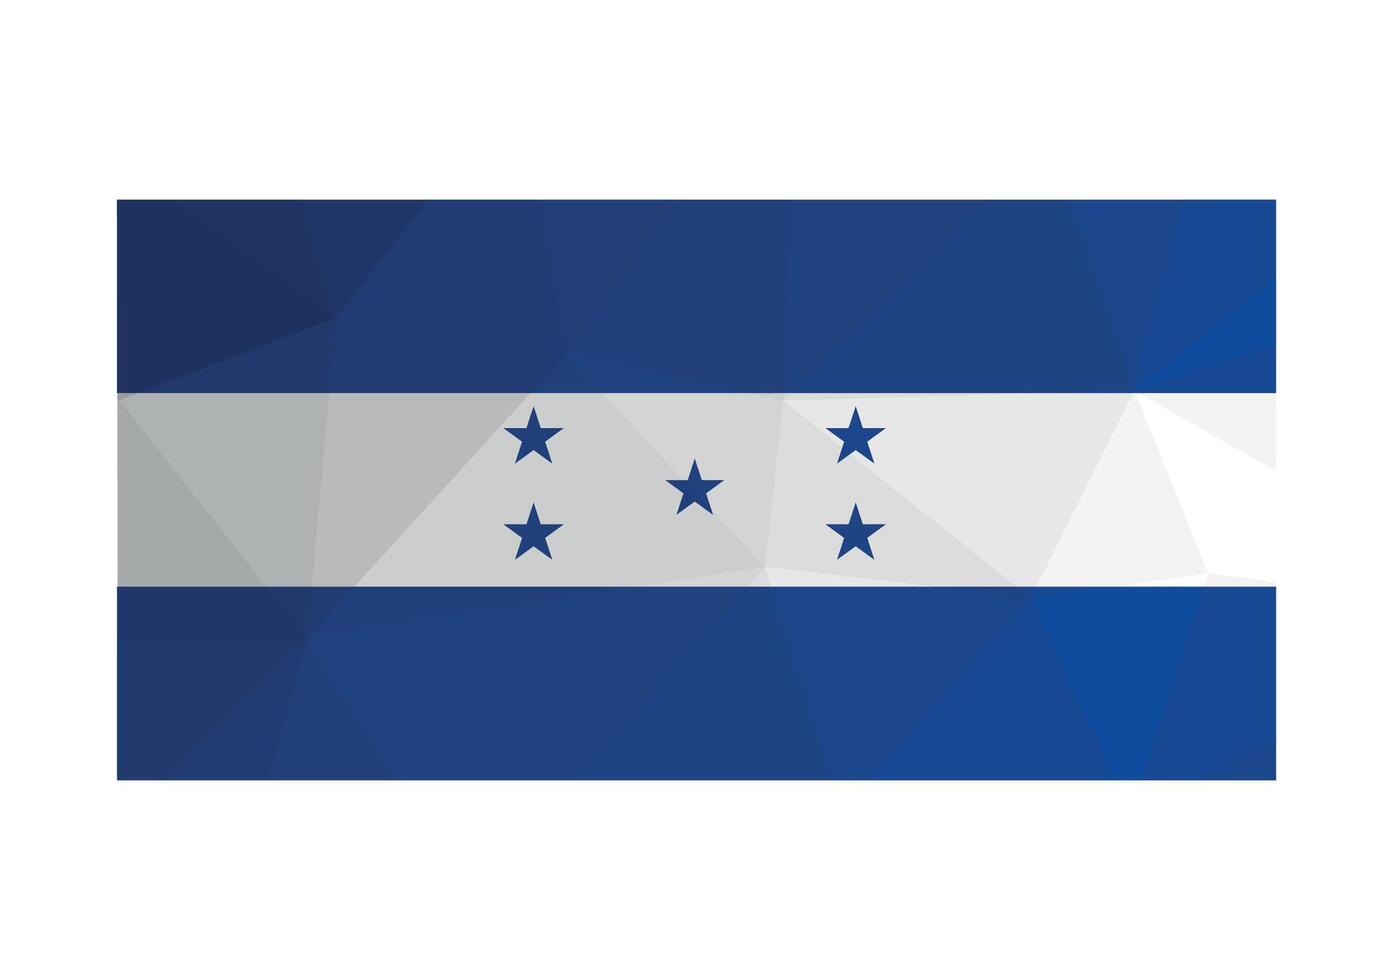 vektor illustration. officiell baner av honduras. nationell flagga med blå och vit Ränder och stjärnor. kreativ design i låg poly stil med triangel- former